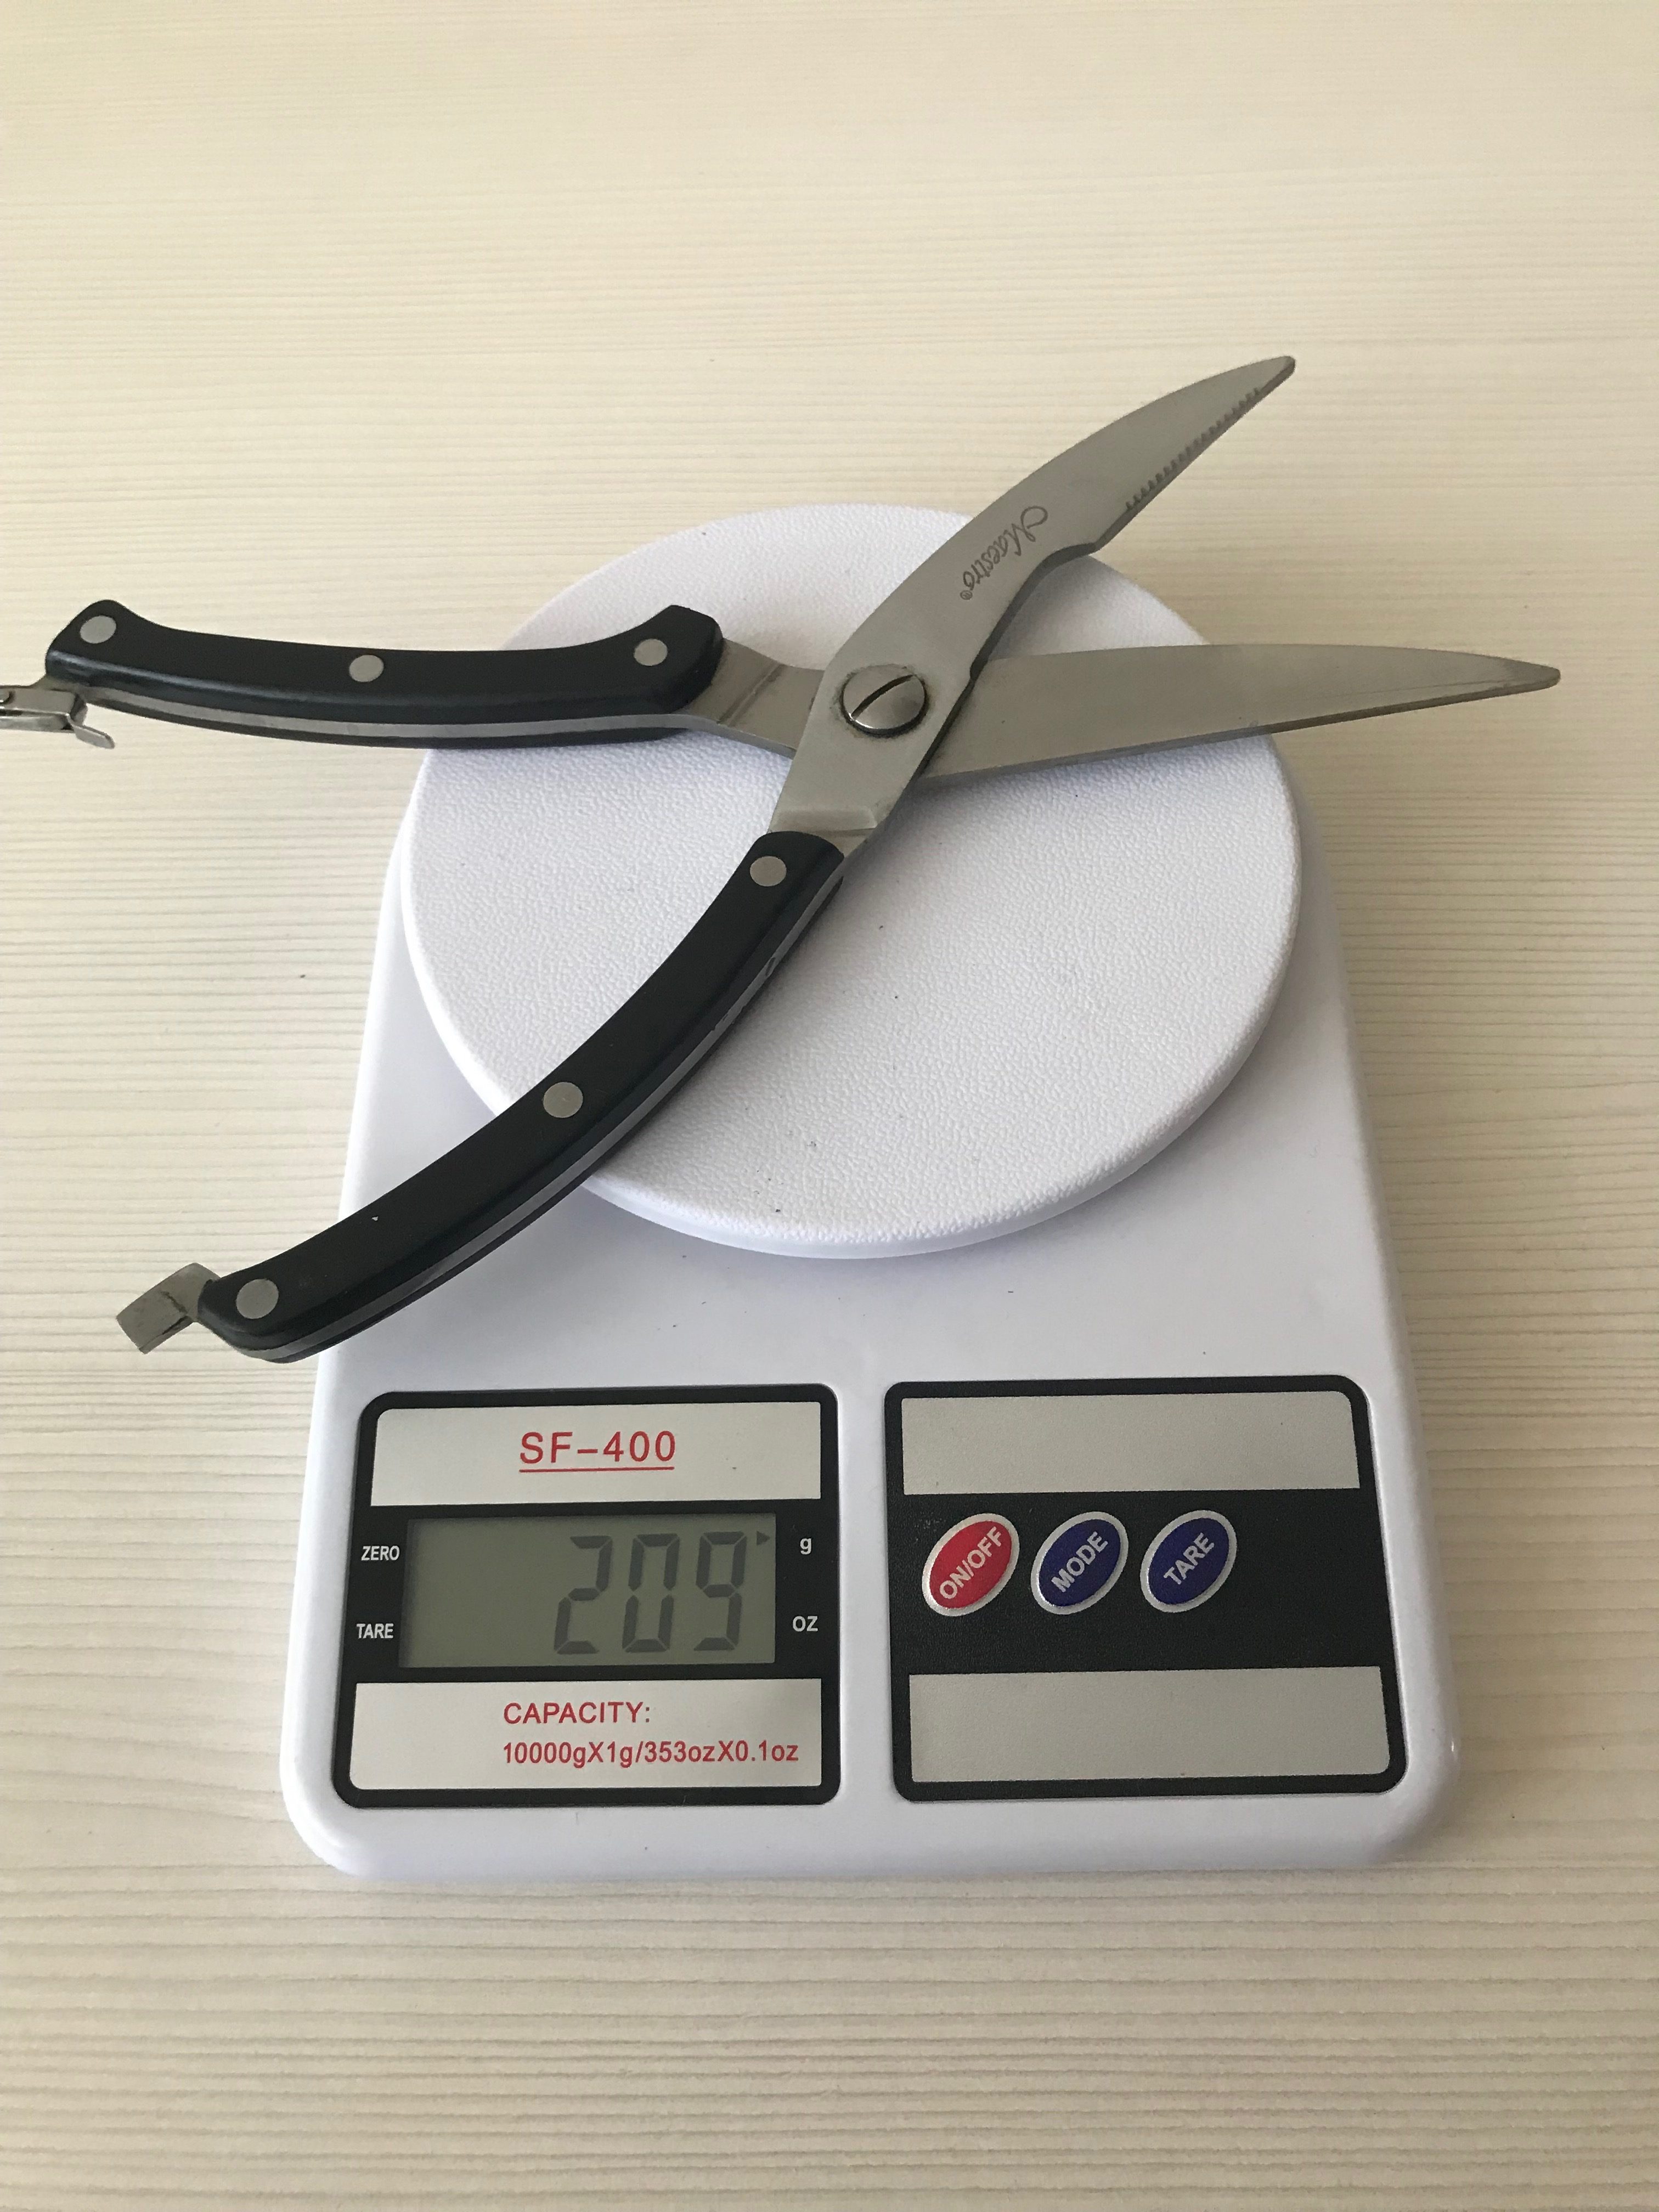 How much do kitchen scissors weigh?